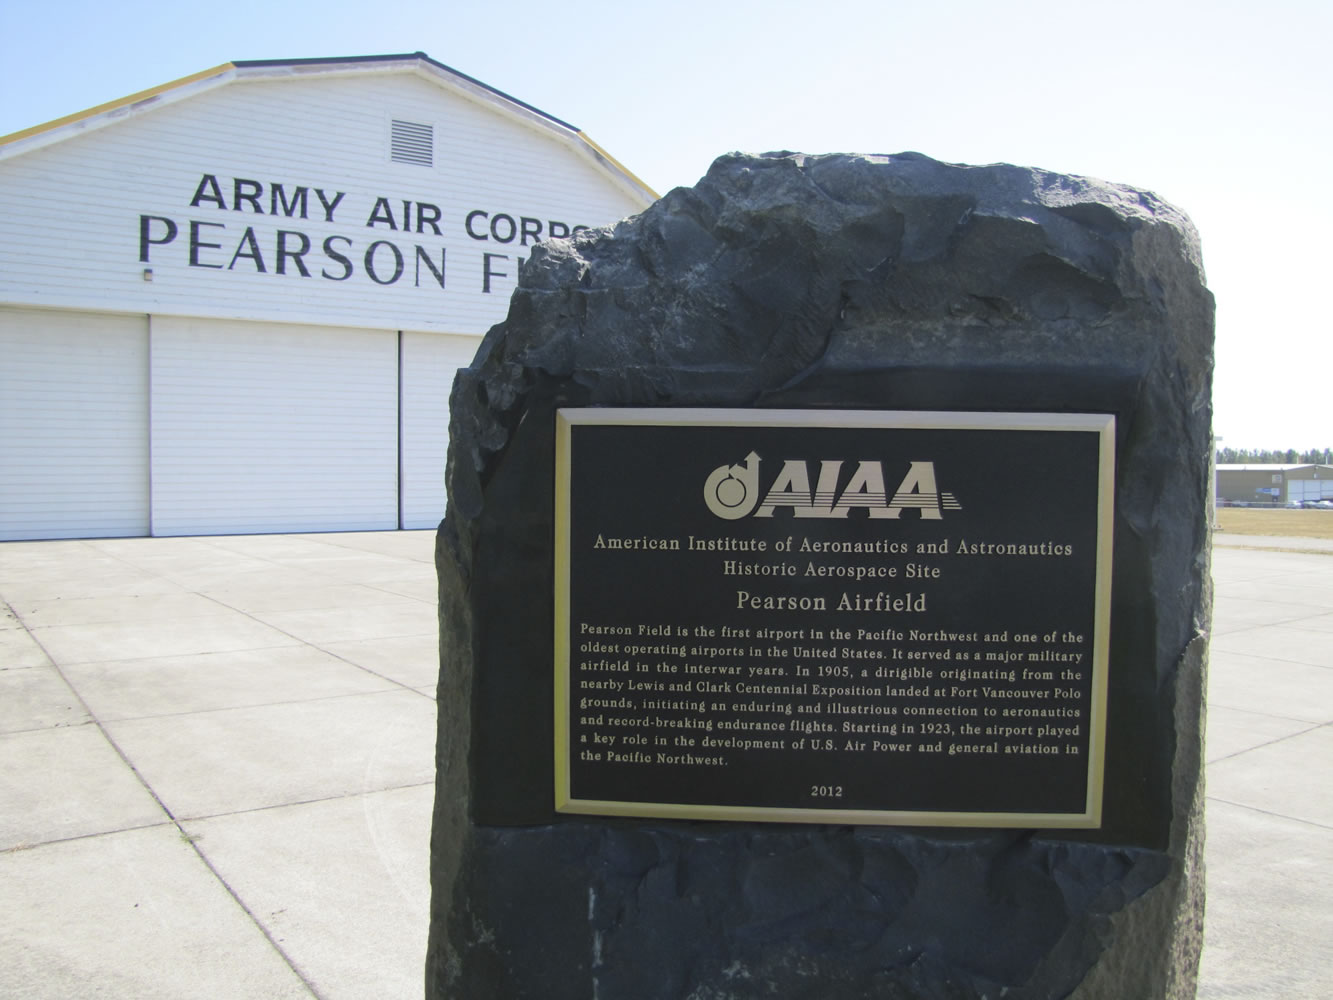 Pearson Field's Historic Aerospace Site plaque.